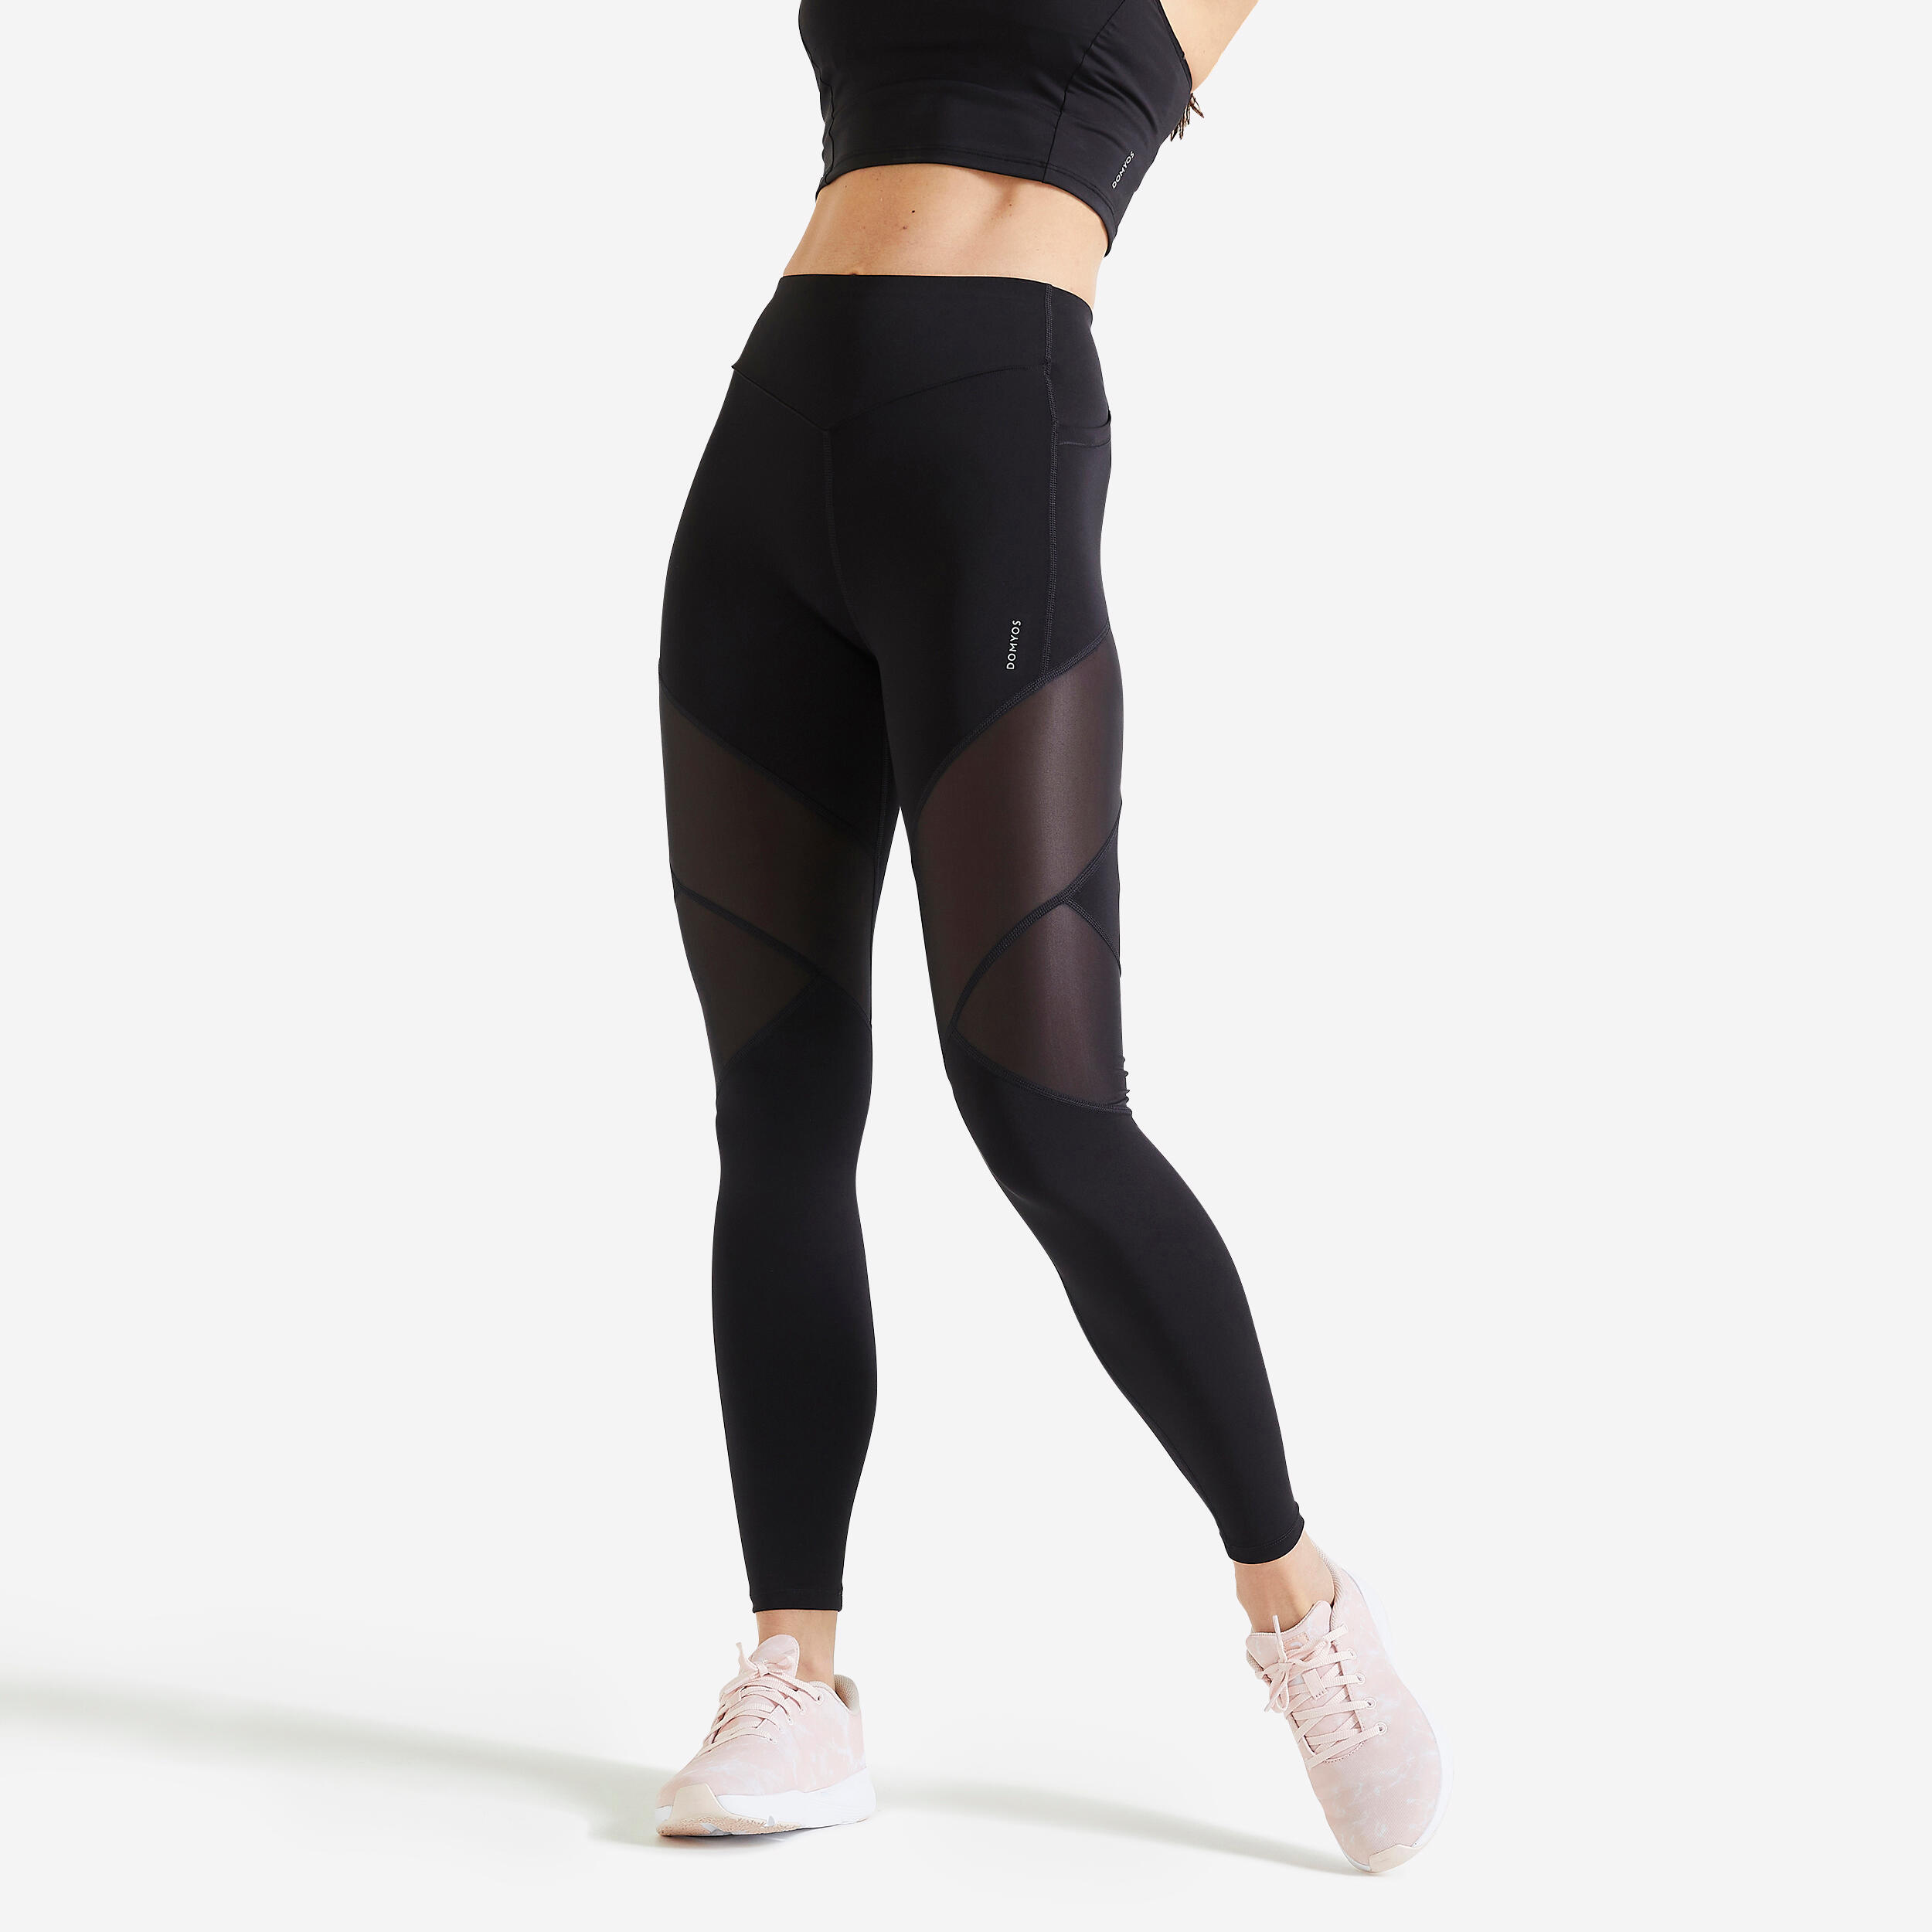 Women's Slim-Fit Fitness Leggings 100 - Mottled Dark Grey - Decathlon